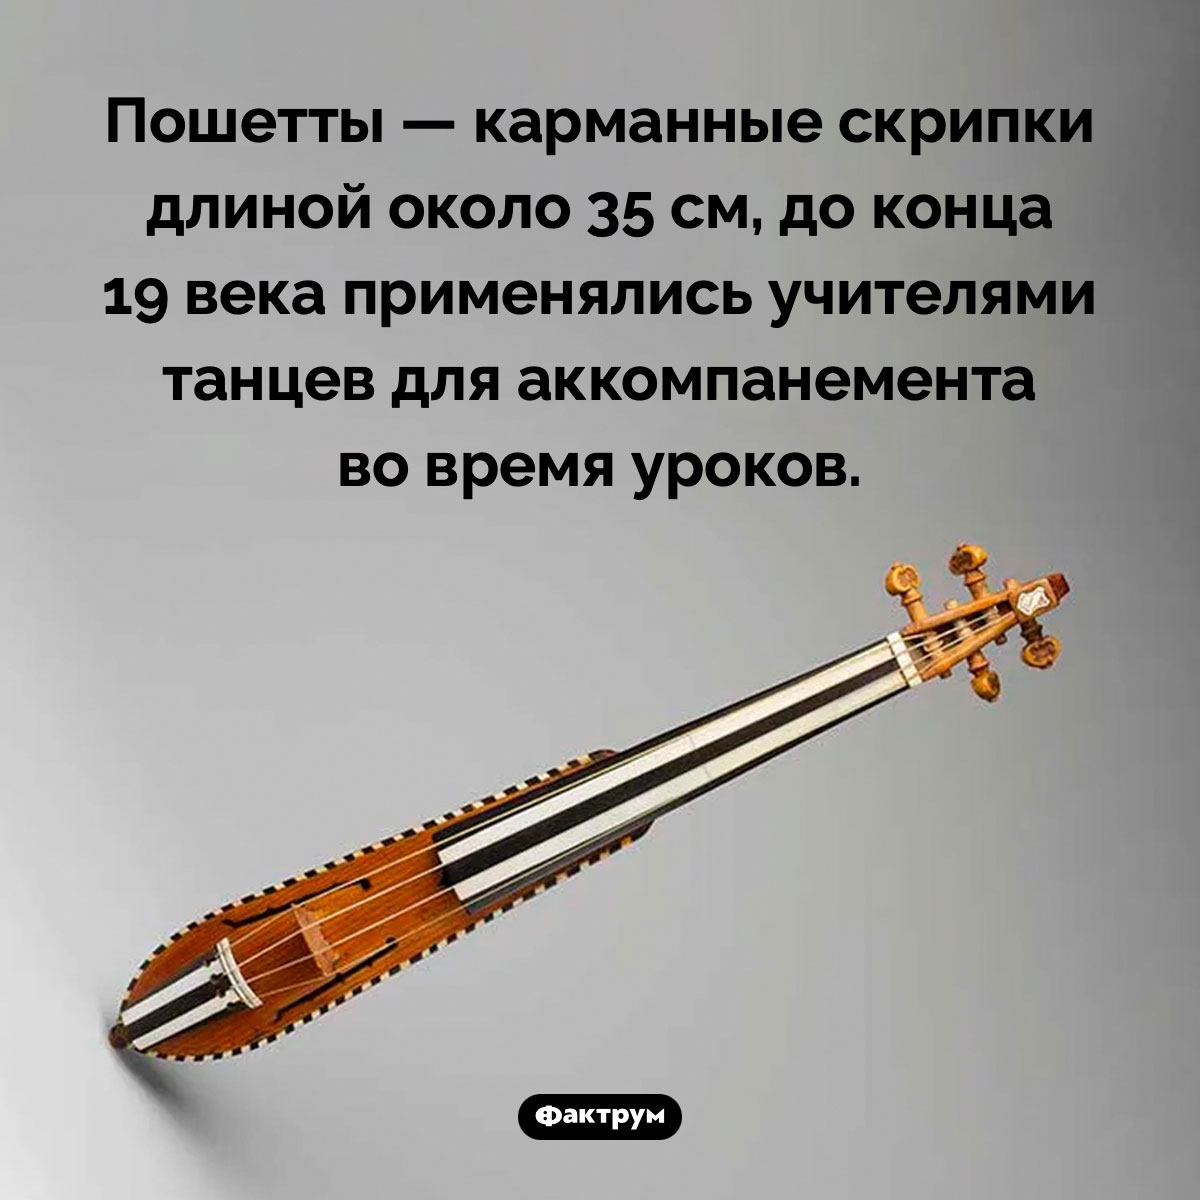 Карманная скрипка «Пошетта». Пошетты — карманные скрипки длиной около 35 см, до конца 19 века применялись учителями танцев для аккомпанемента во время уроков.